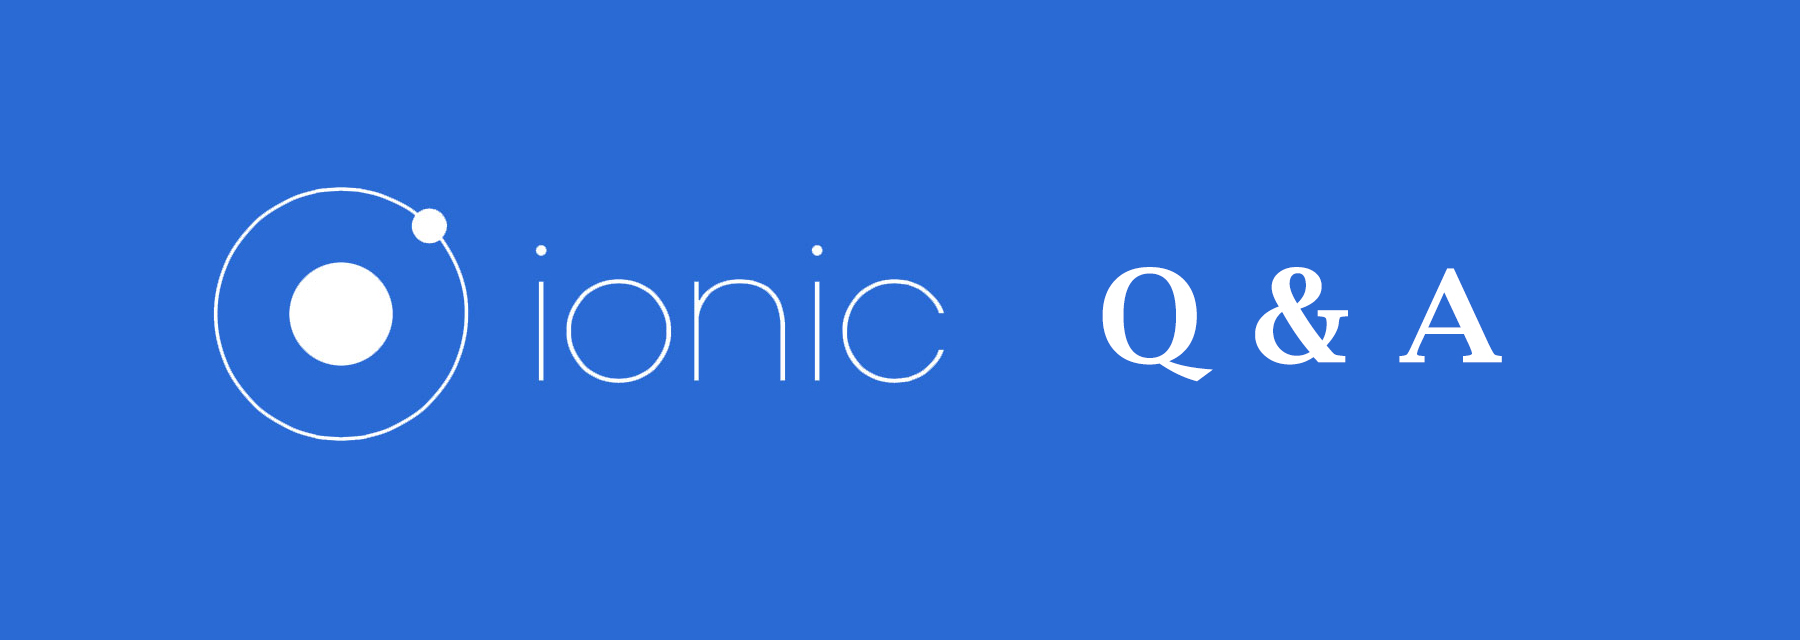 Ionic Q&A